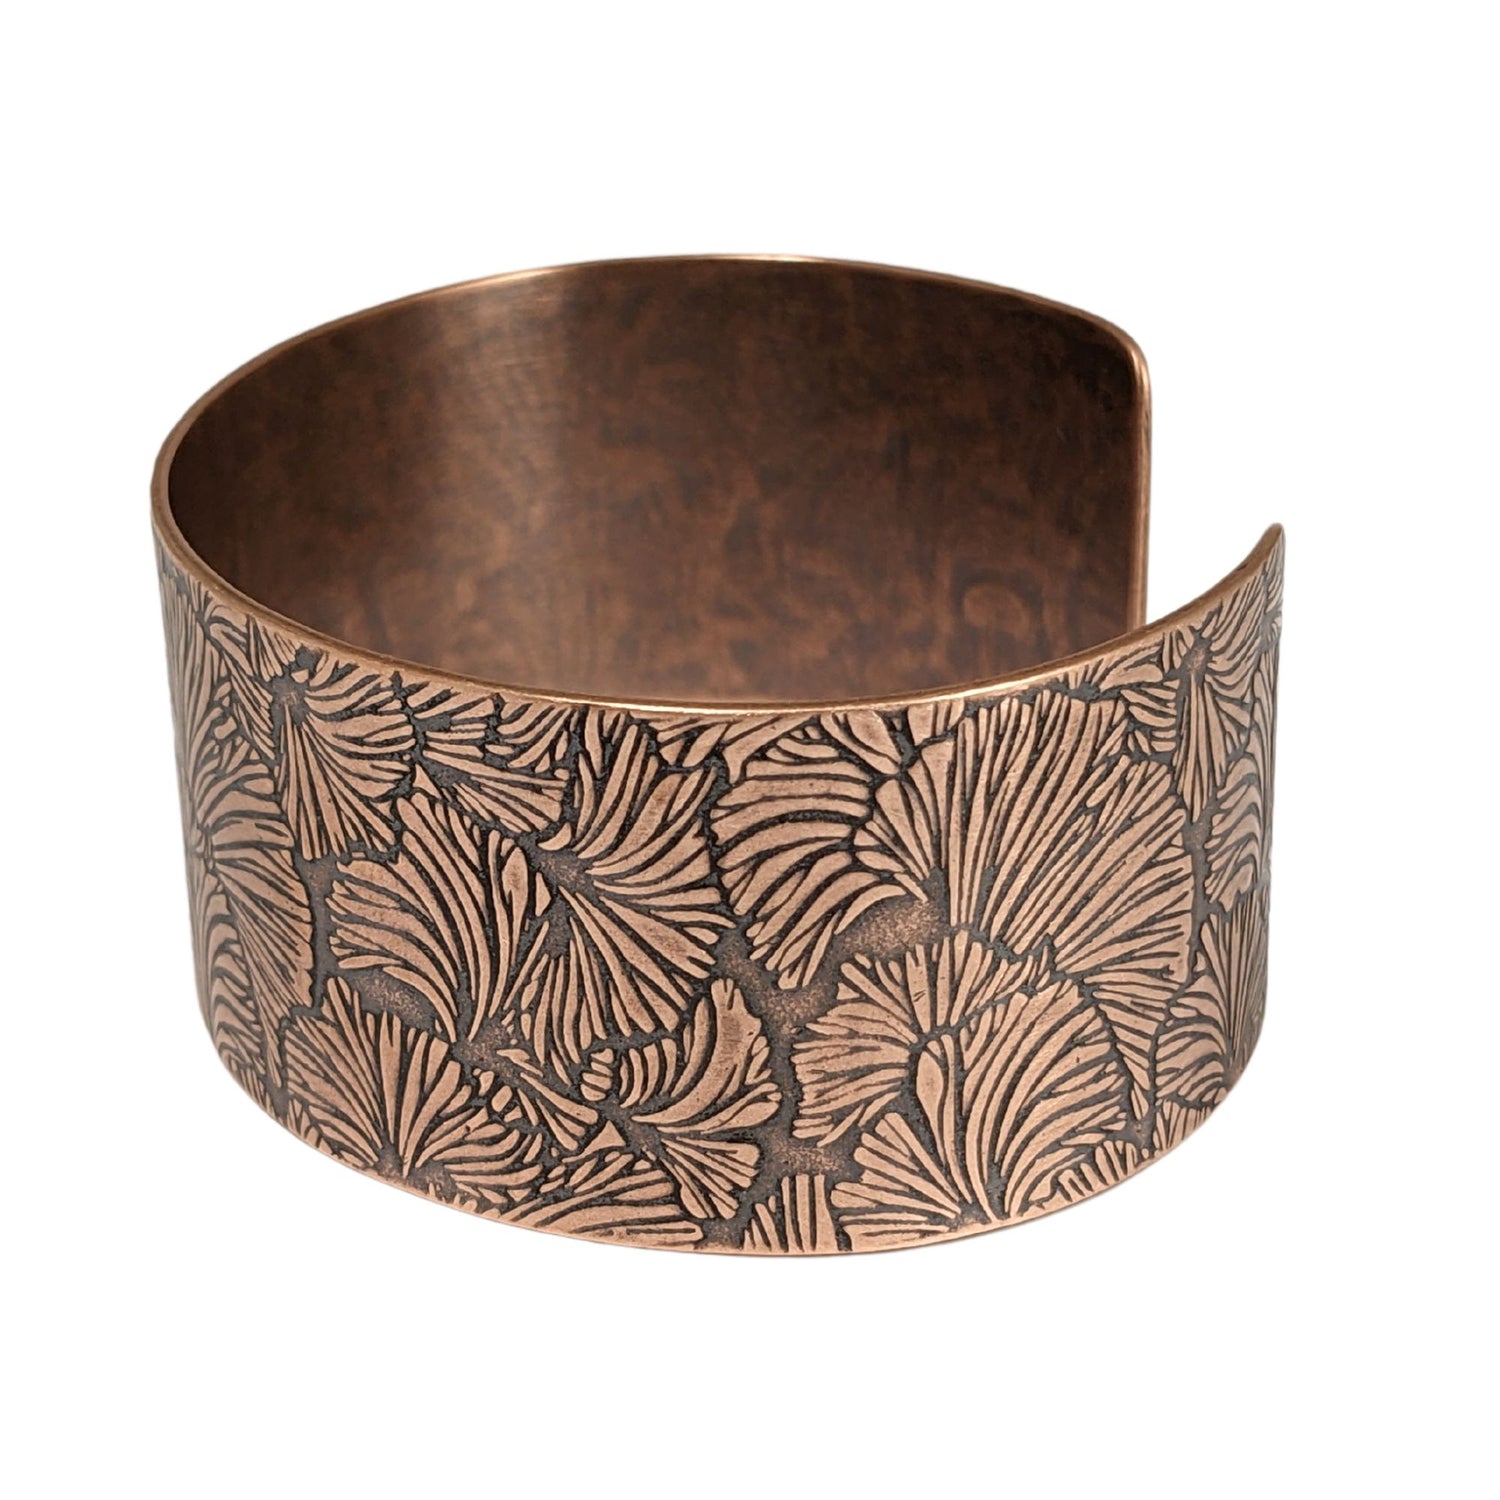 Copper cuff bracelet with a ginkgo leaf pattern design